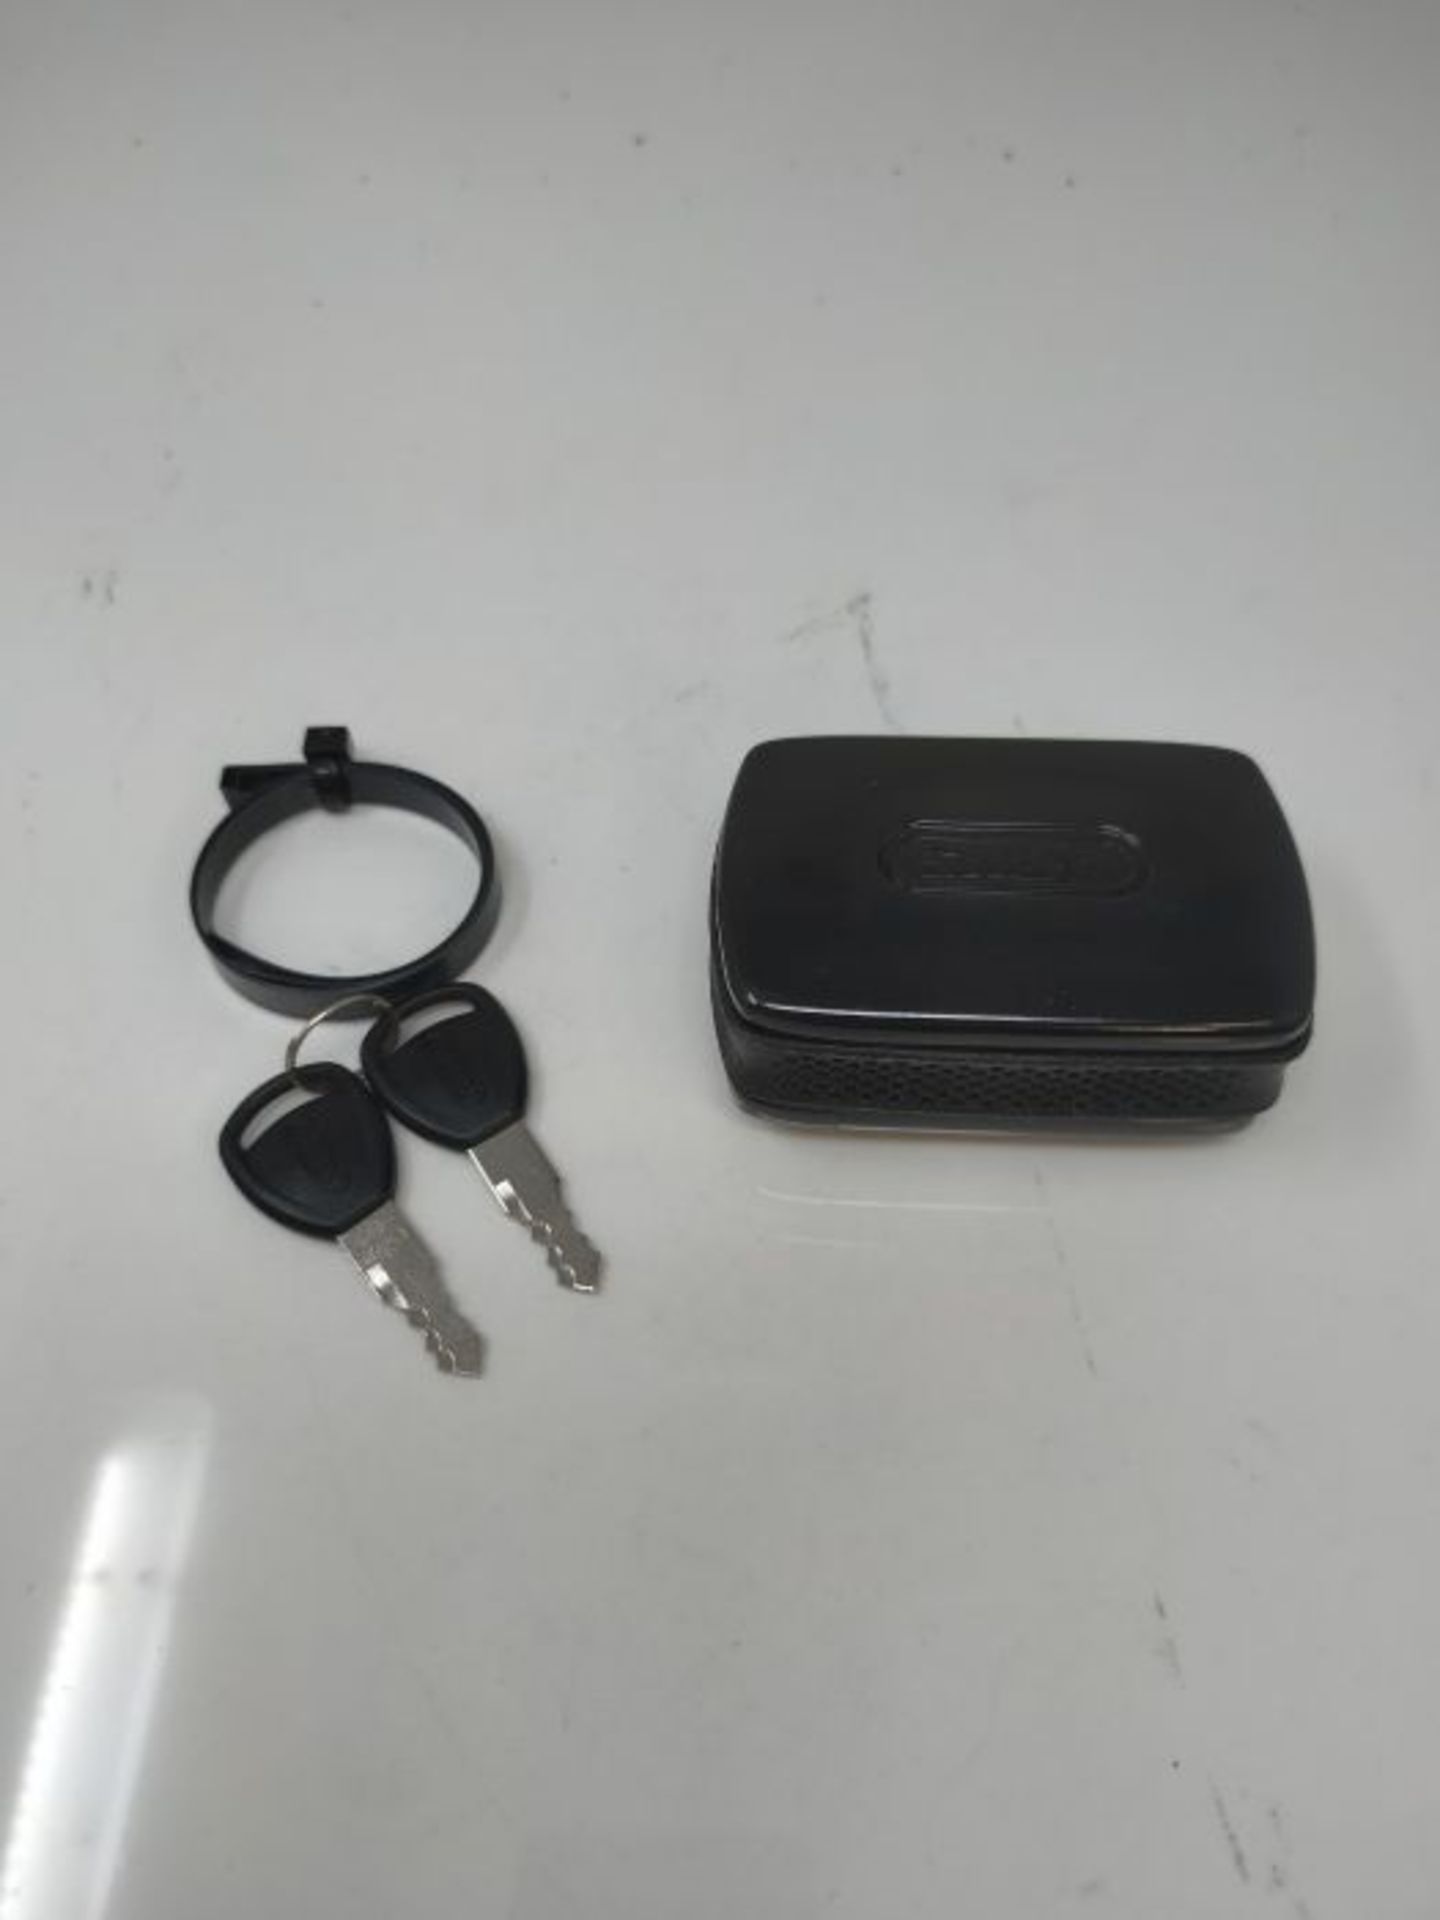 ABUS 88689 Alarmbox - Mobile Alarmanlage zur Sicherung von FahrrÃ¤dern, Kinderwagen, - Image 3 of 3